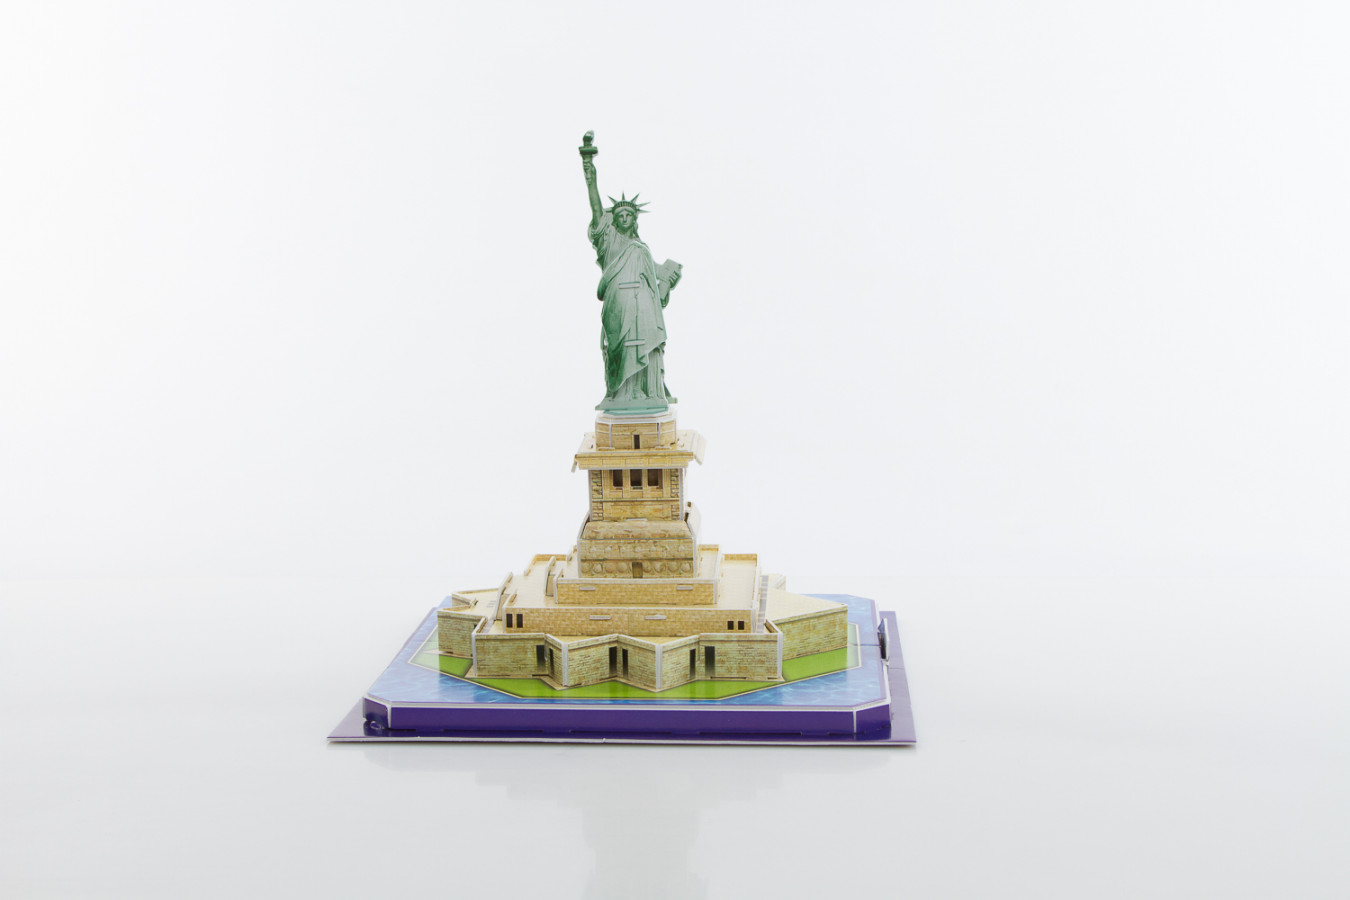 ImagenRompecabezas 3D: Estatua de la libertad